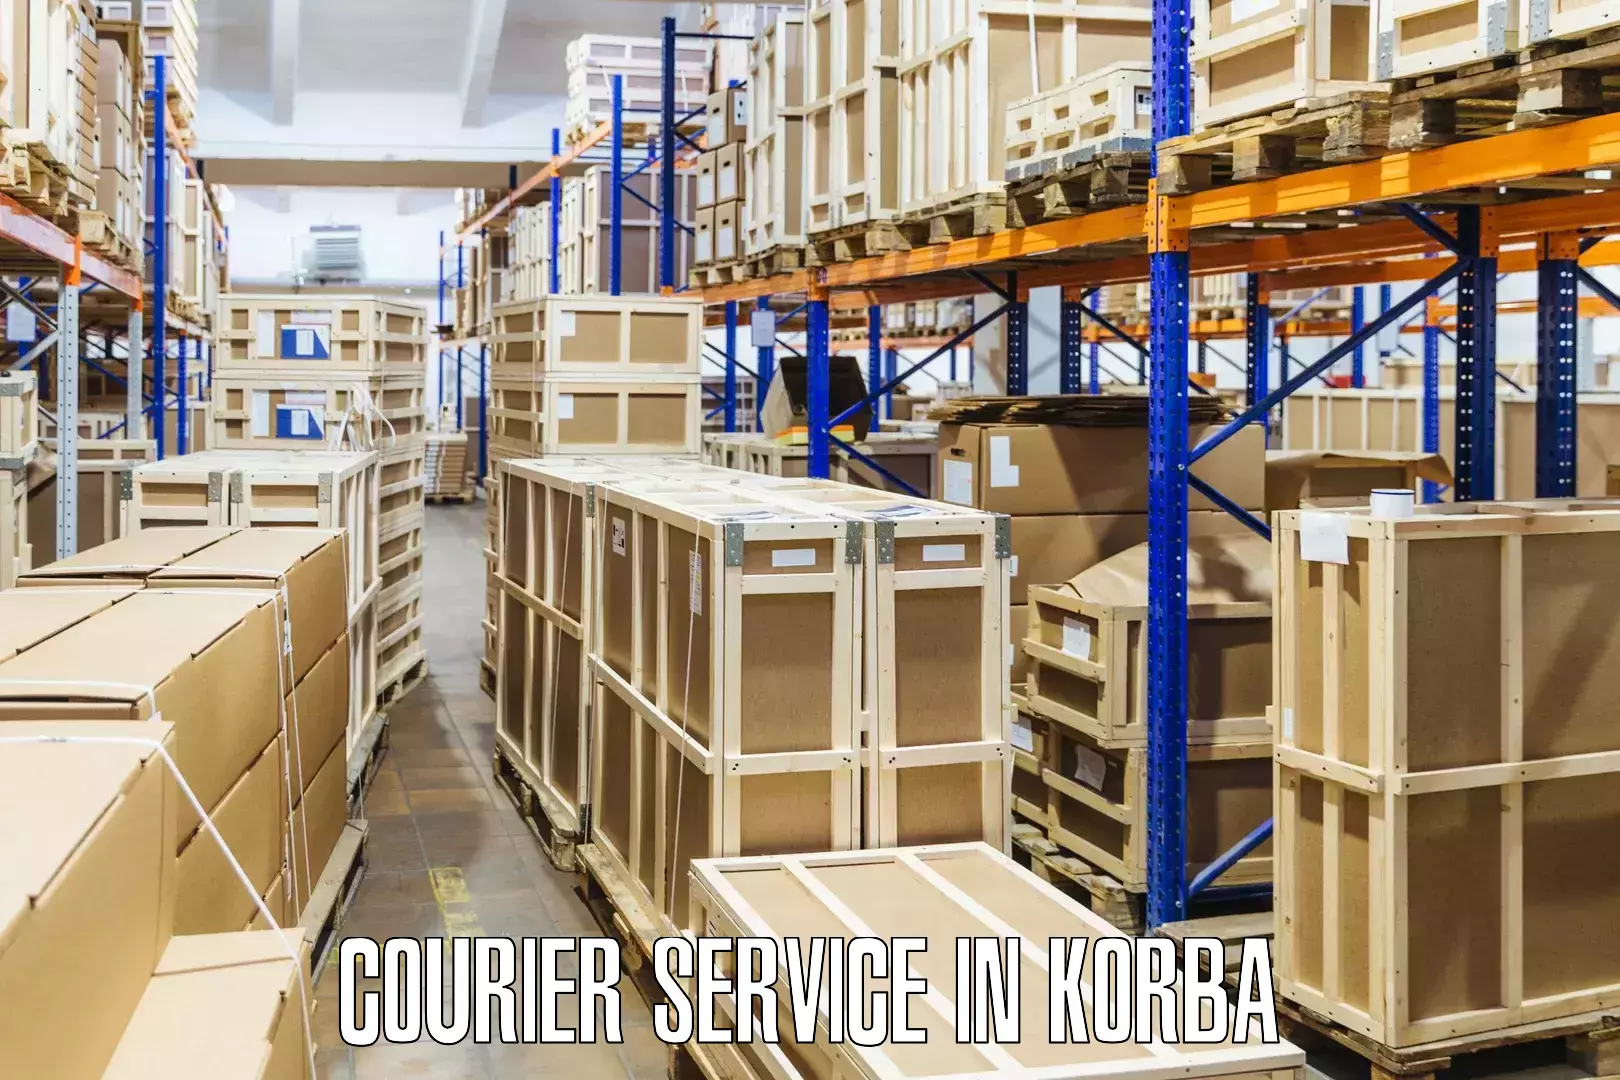 Tech-enabled shipping in Korba